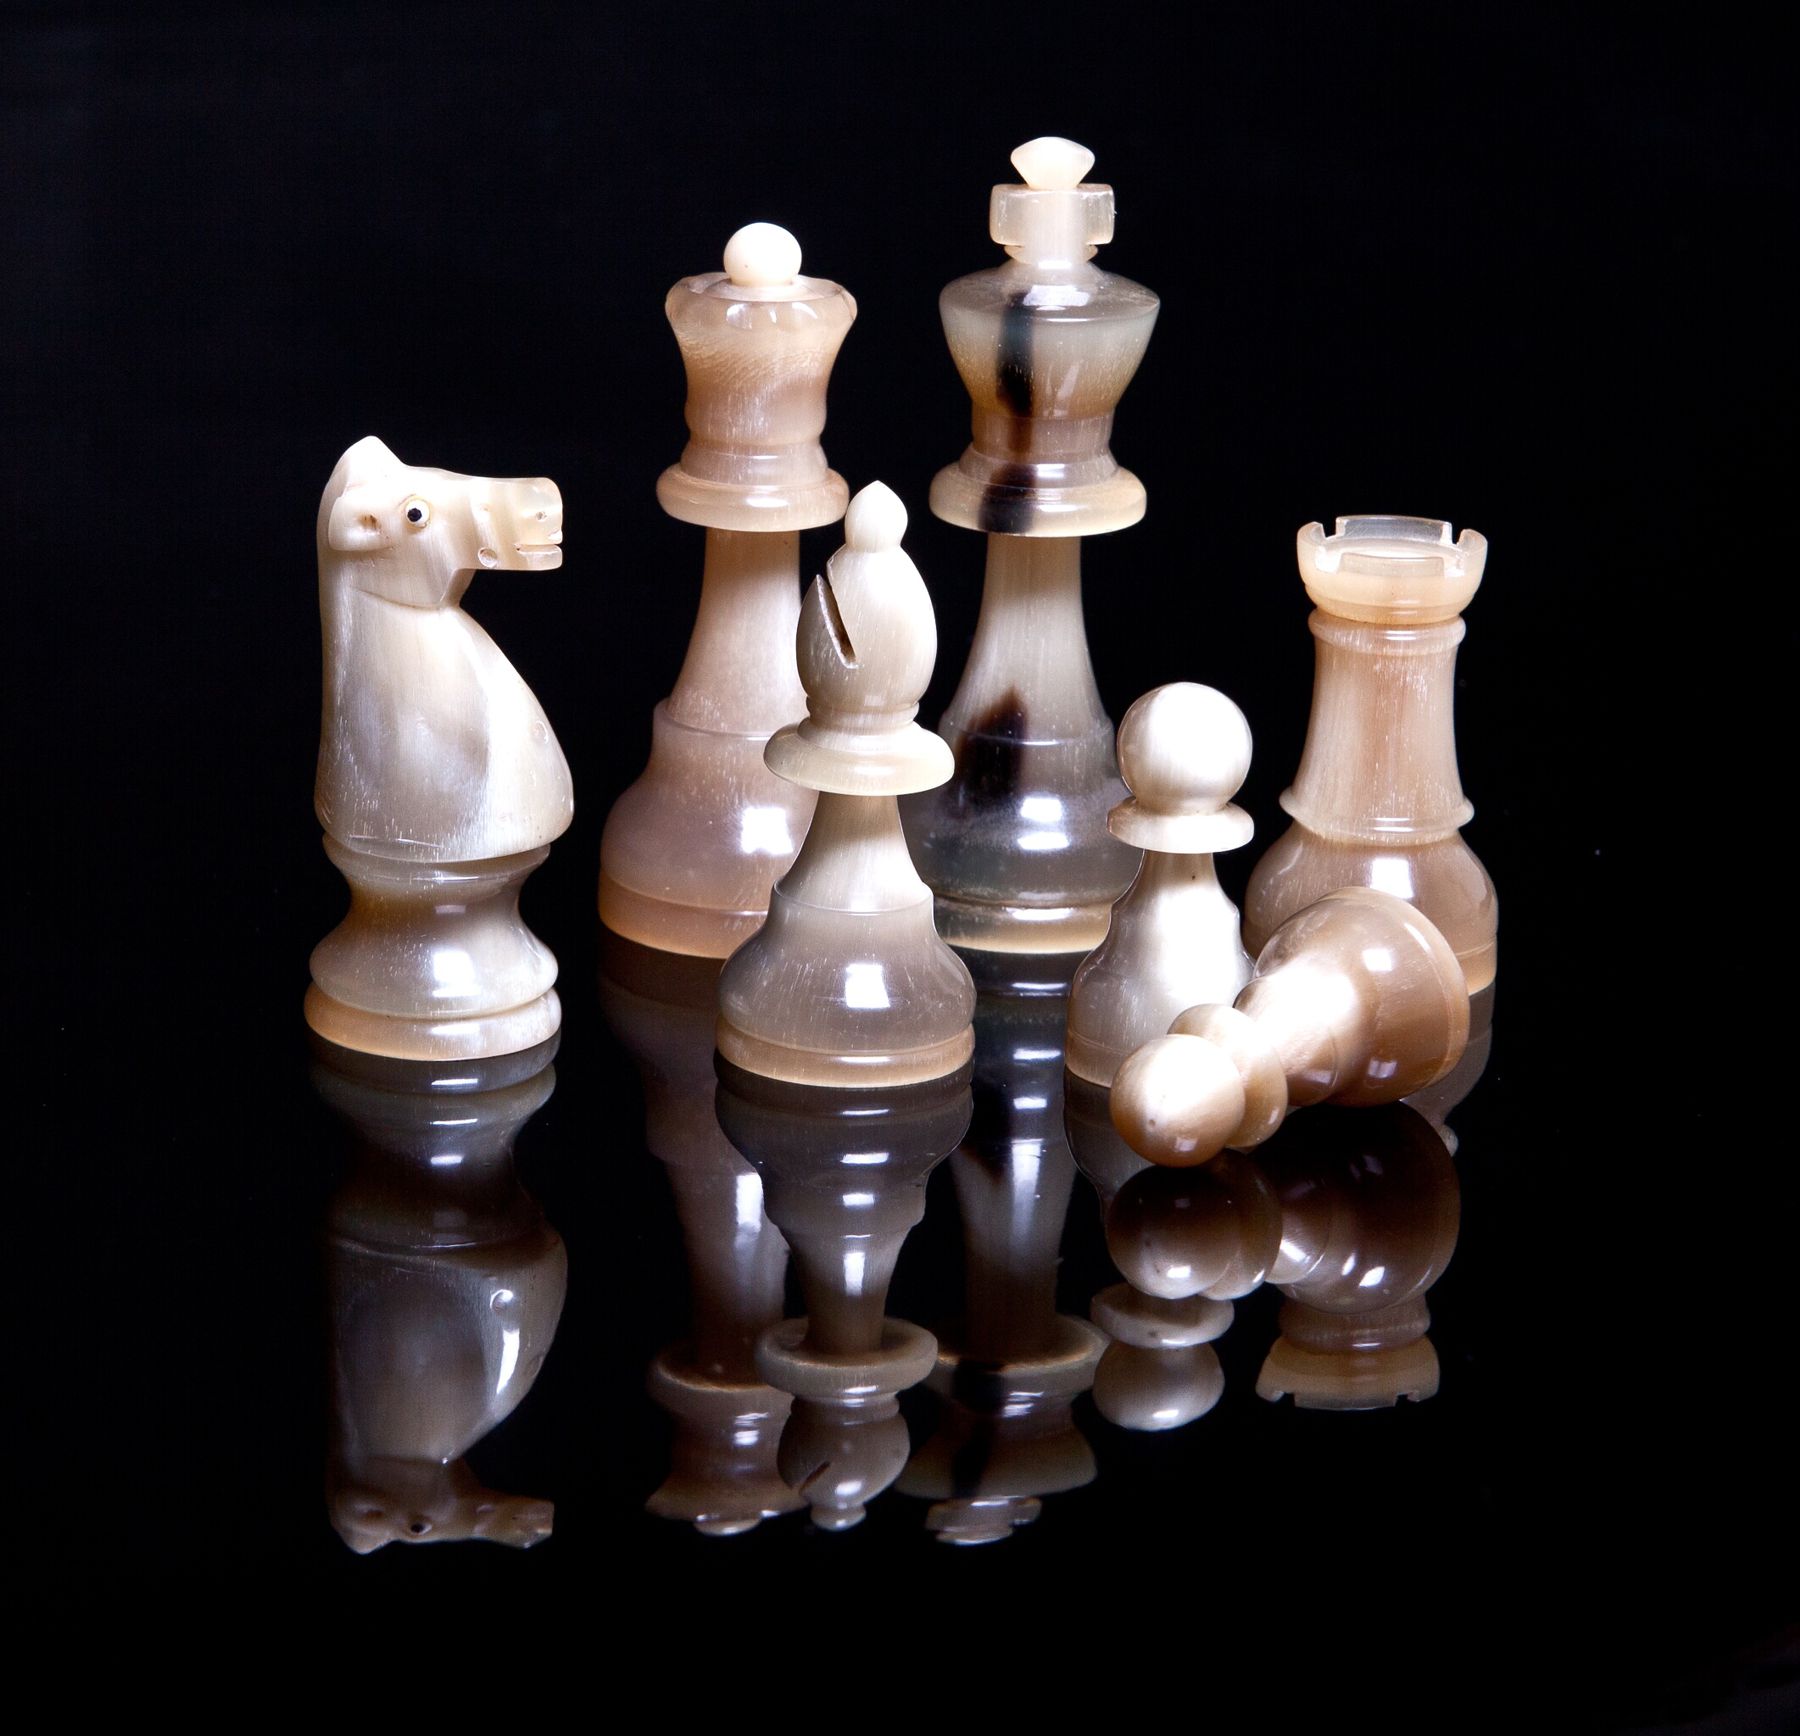 Schachspiel mit Schublade und Figuren aus Horn - 1017 - 5 - 2 - 3